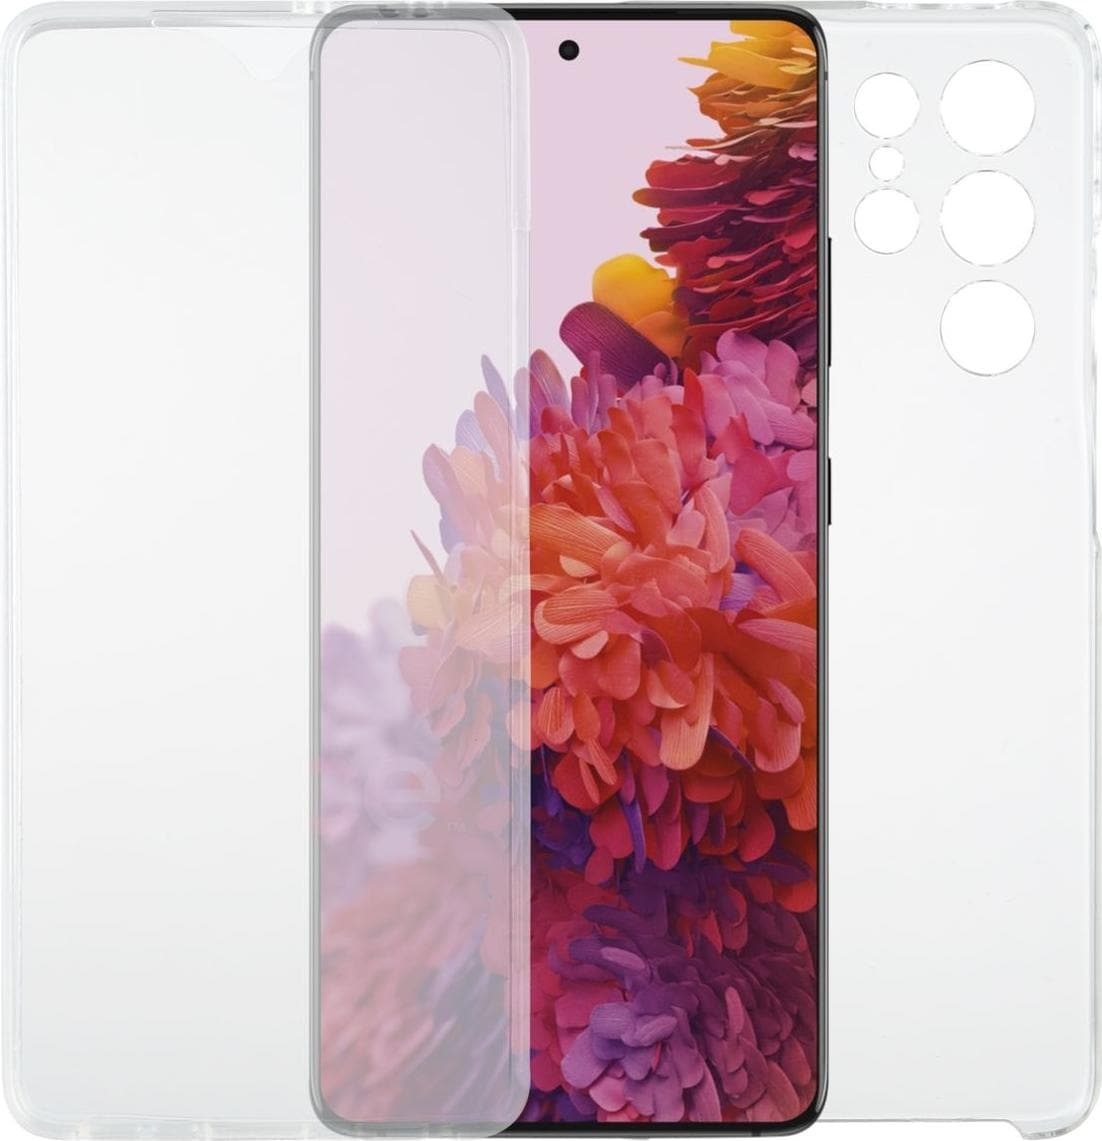 König Design Hülle Handy Schutz für Samsung Galaxy S21 Ultra Case Cover Tasche Transparent (Galaxy S21 Ultra), Smartphone Hülle, Transparent